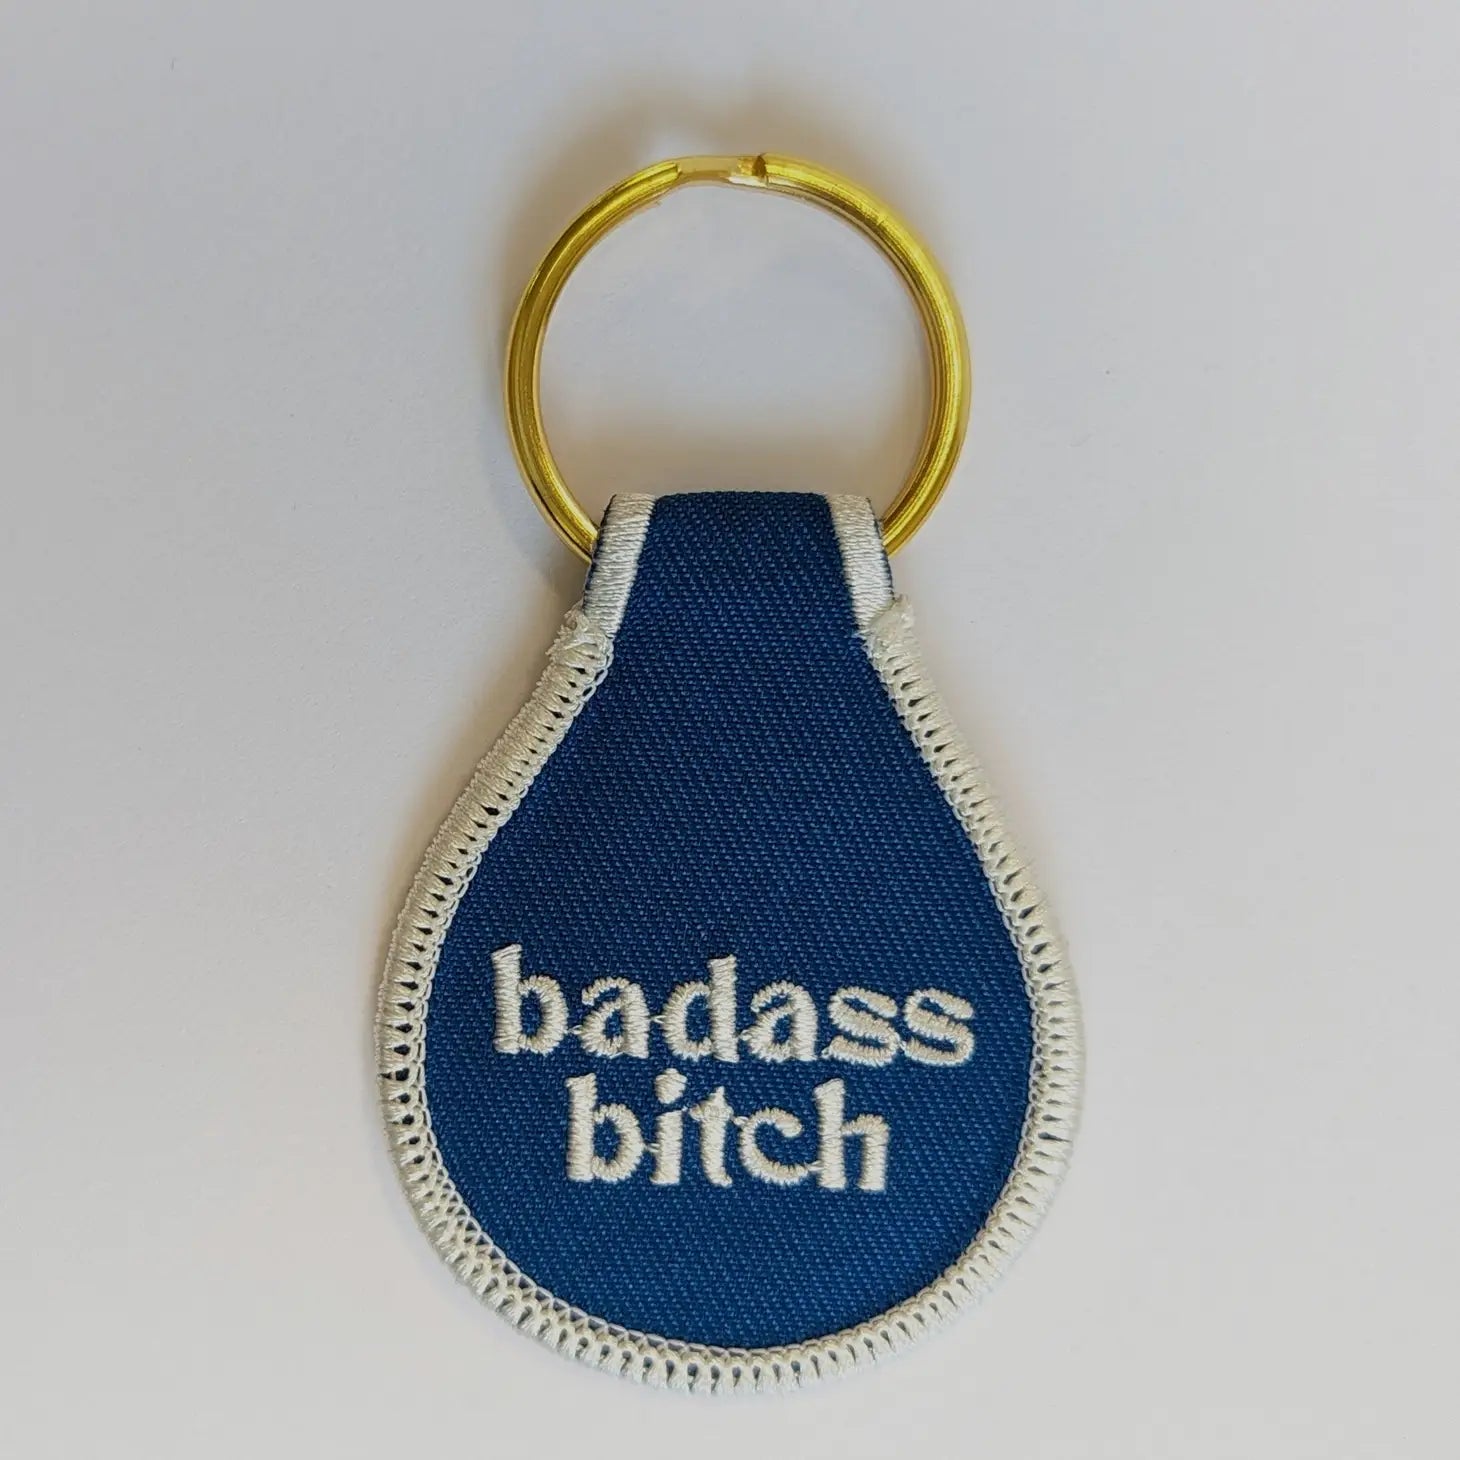 Badass B**ch Embroidered Key Tag - JoeyRae